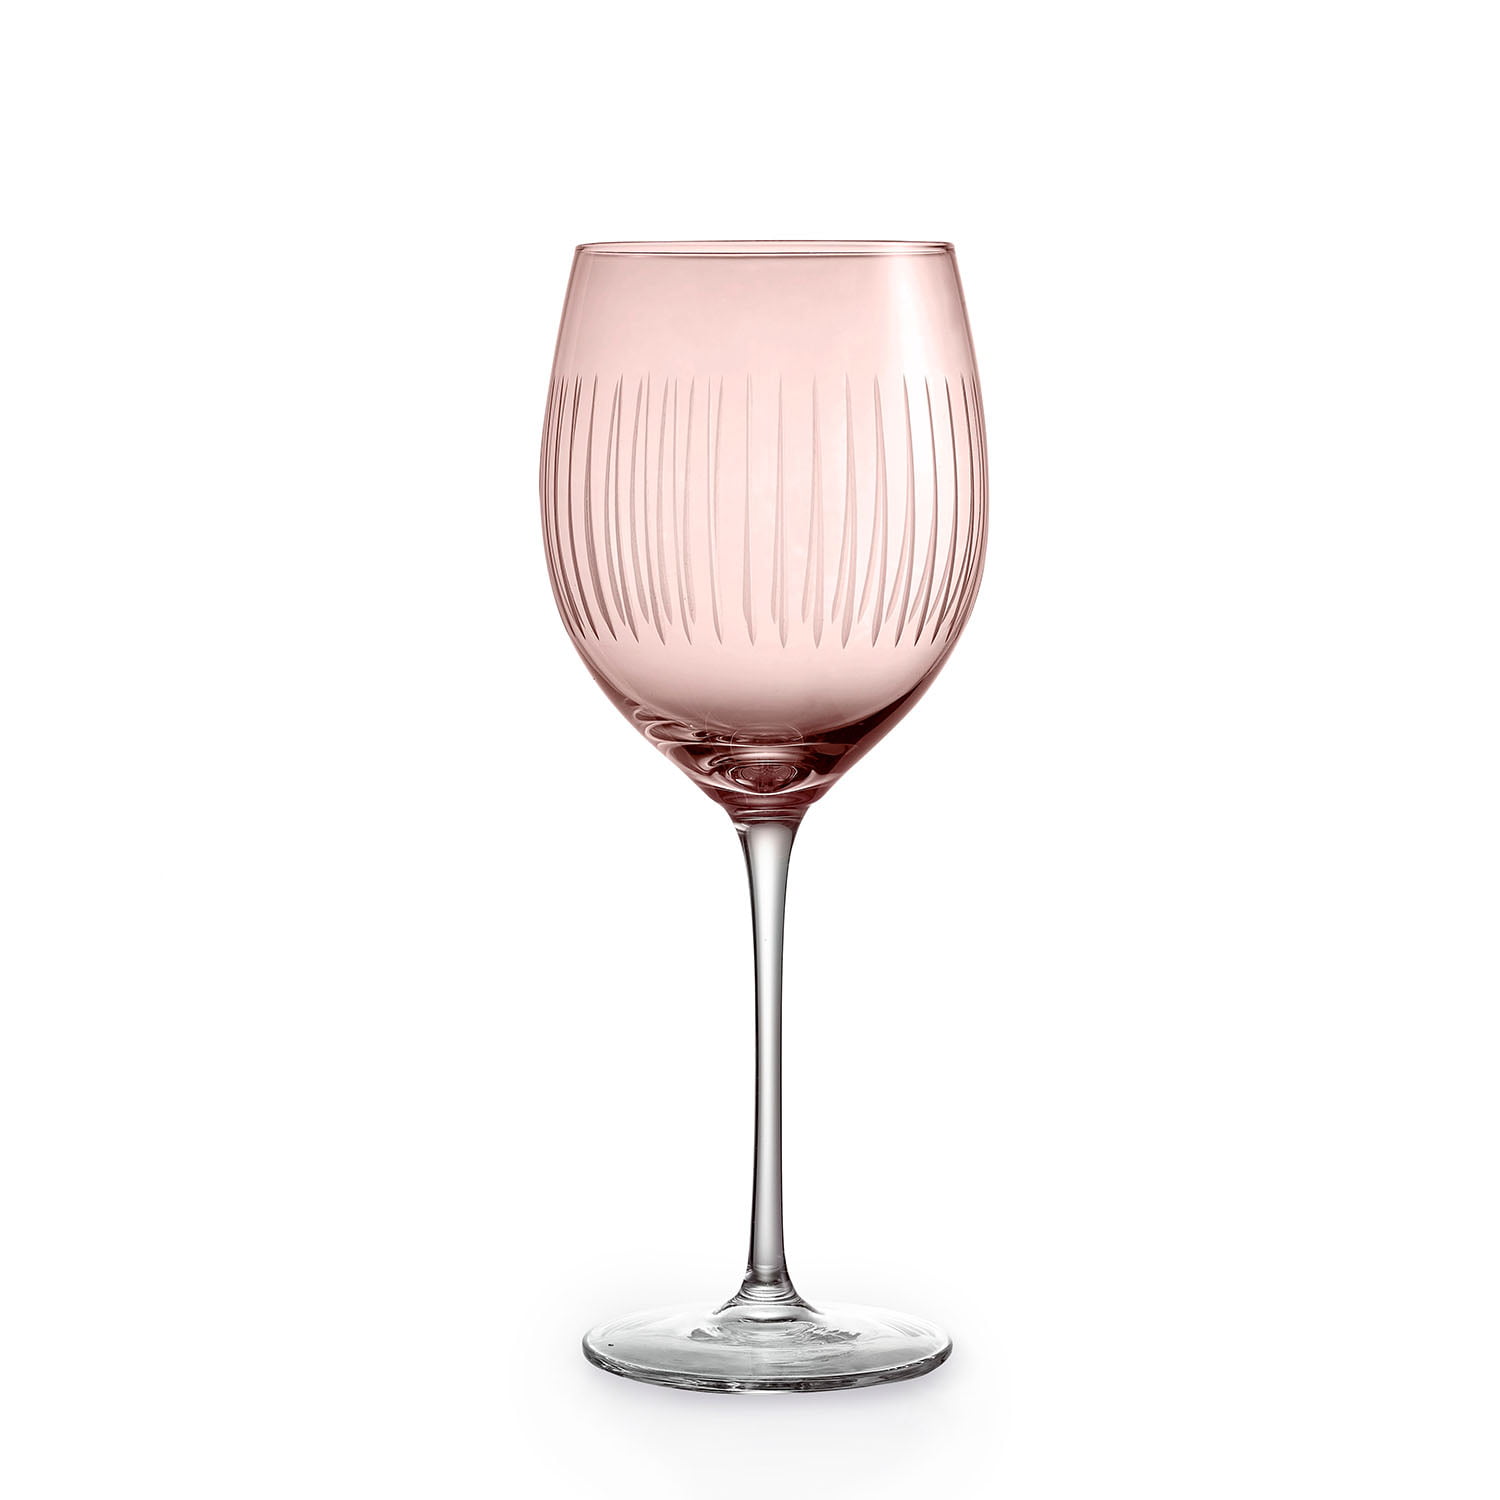 Caskata Quinn Rose Universal Wine Glasses S/2